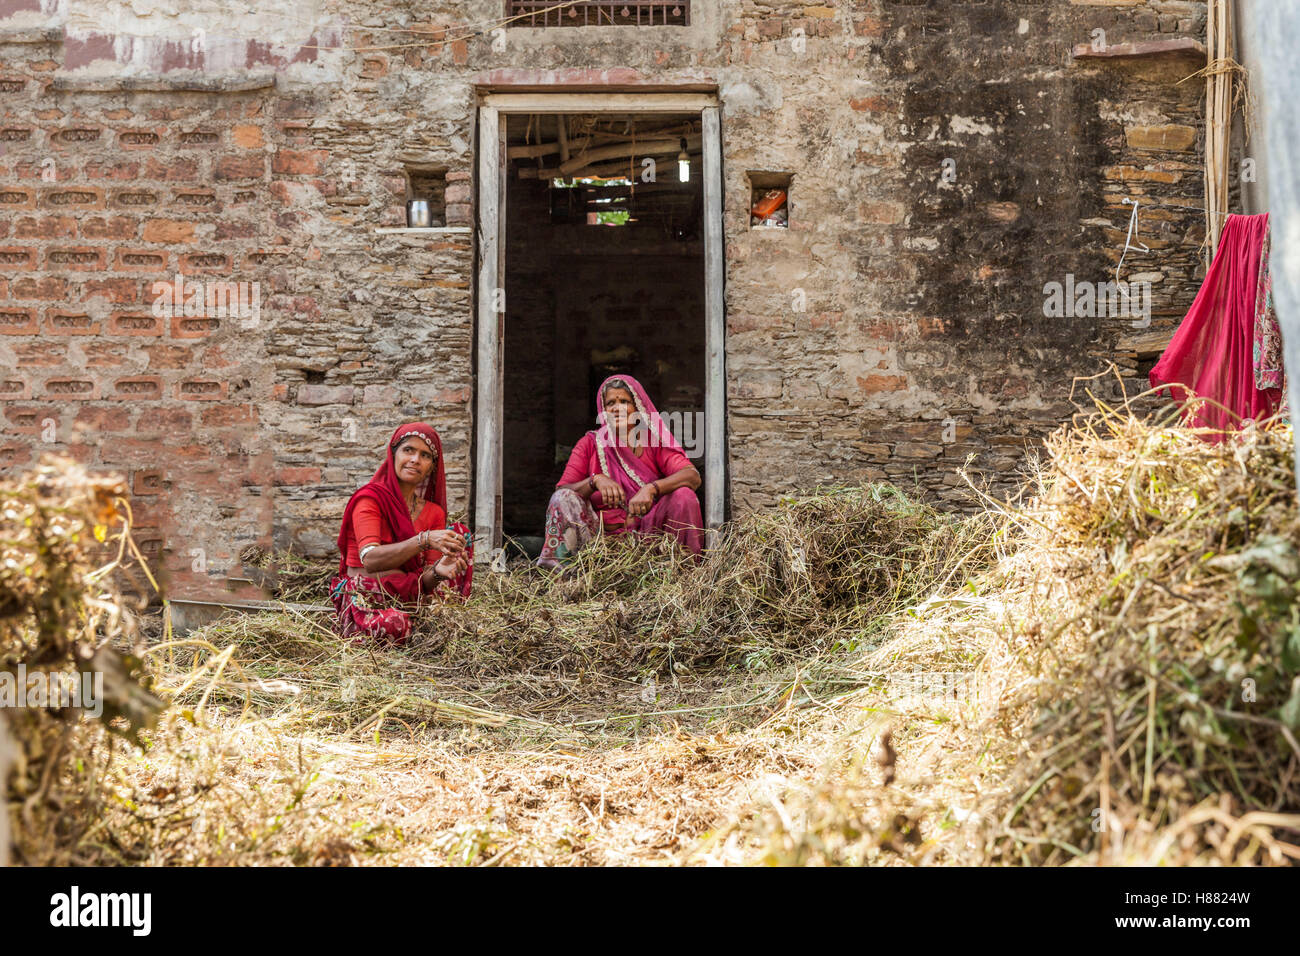 Frau in Rajasthan in der Landwirtschaft Arbeit besetzt Stockfoto